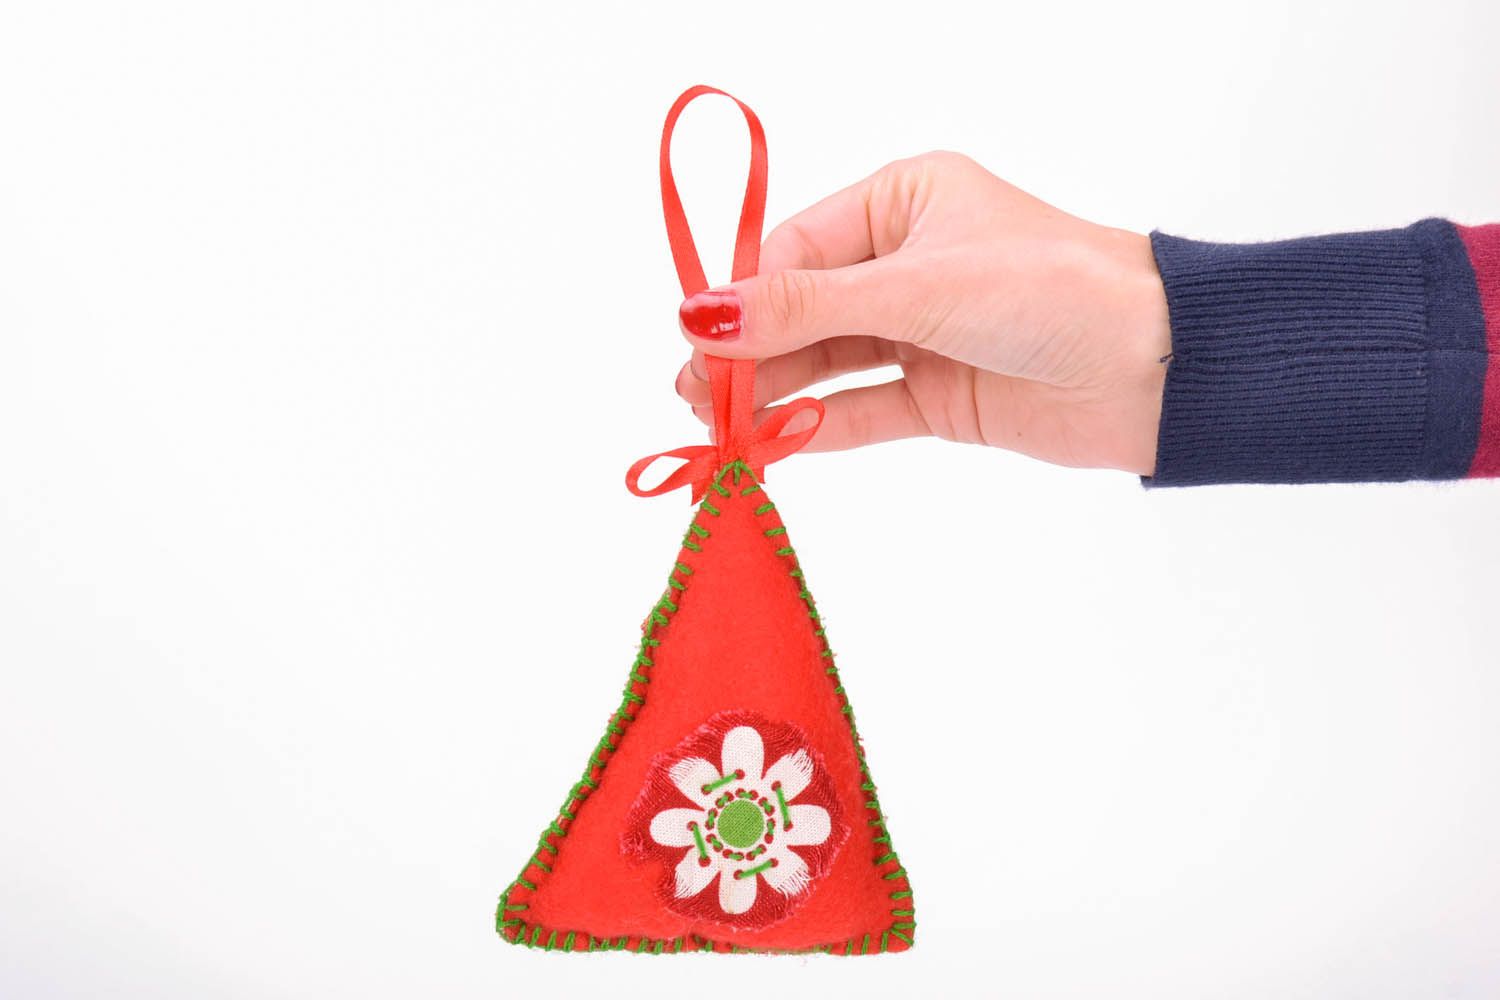 Brinquedo da árvore de Natal costurado de fleece feito em tons vermelhos e verdes foto 5